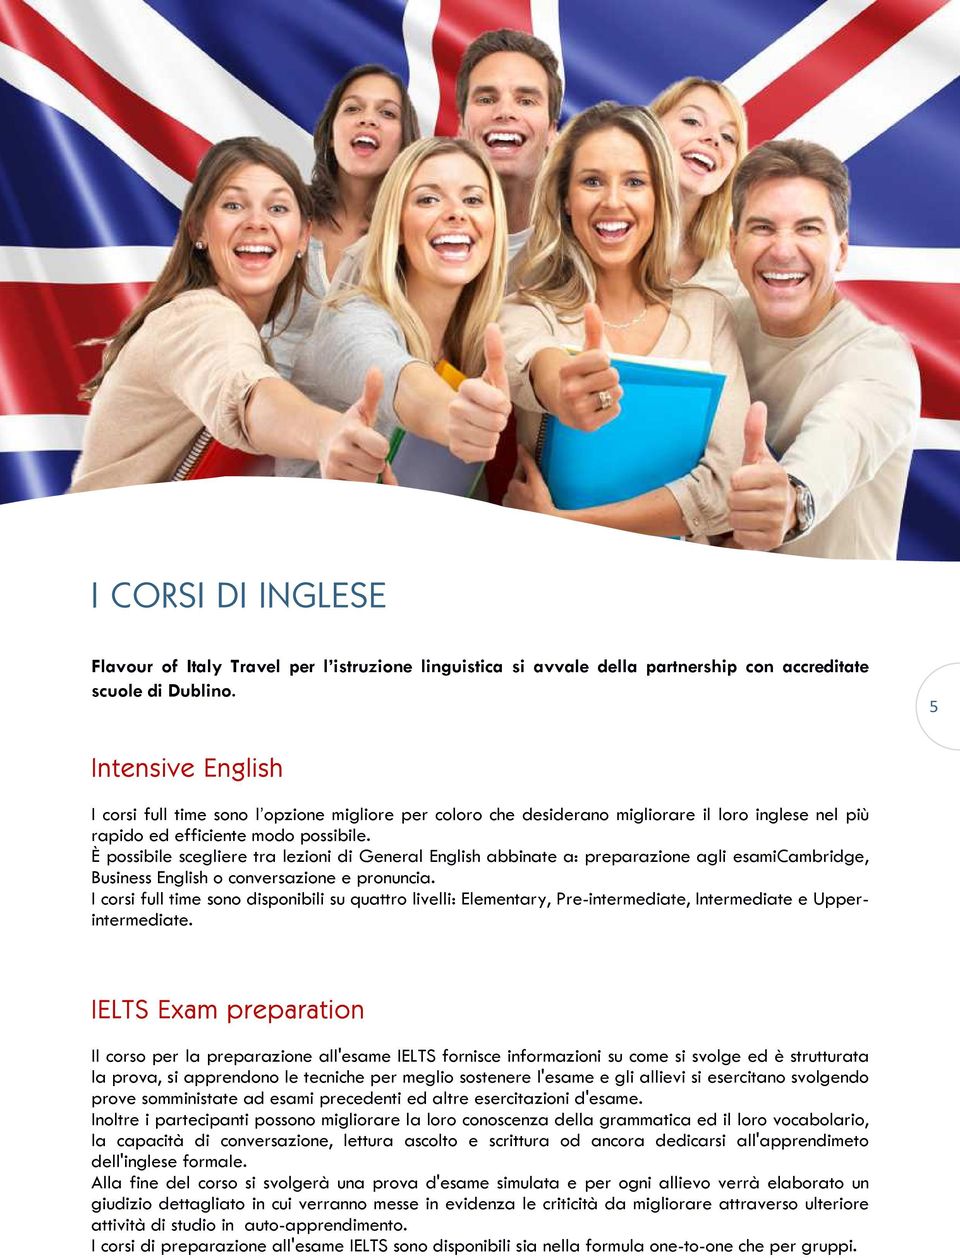 È possibile scegliere tra lezioni di General English abbinate a: preparazione agli esamicambridge, Business English o conversazione e pronuncia.